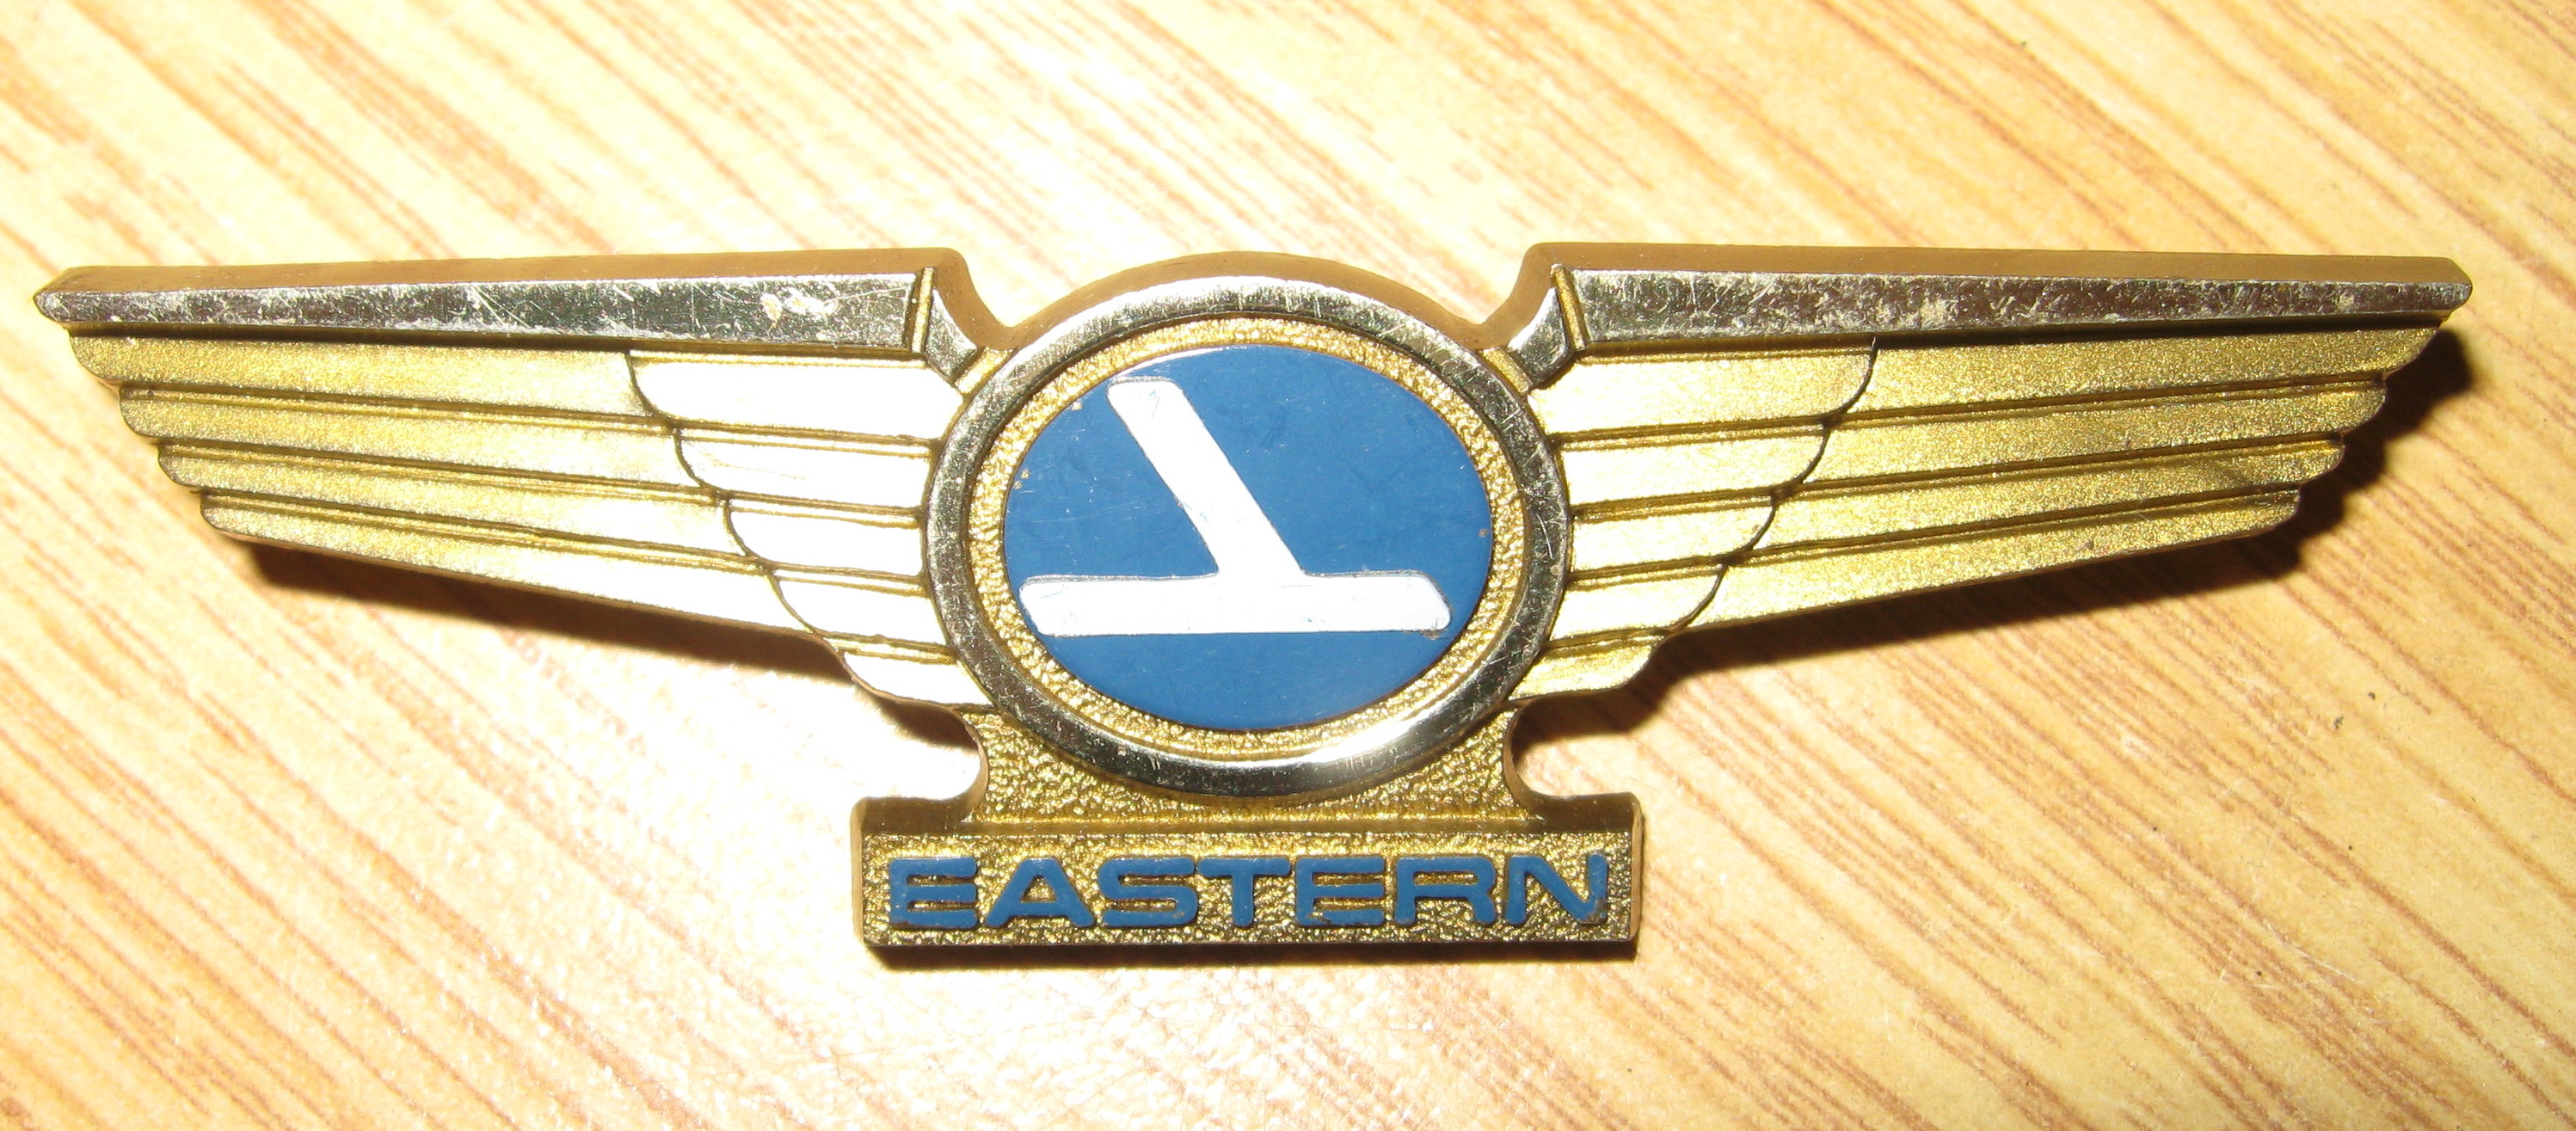 Eastern Airlines plastic kiddie wings